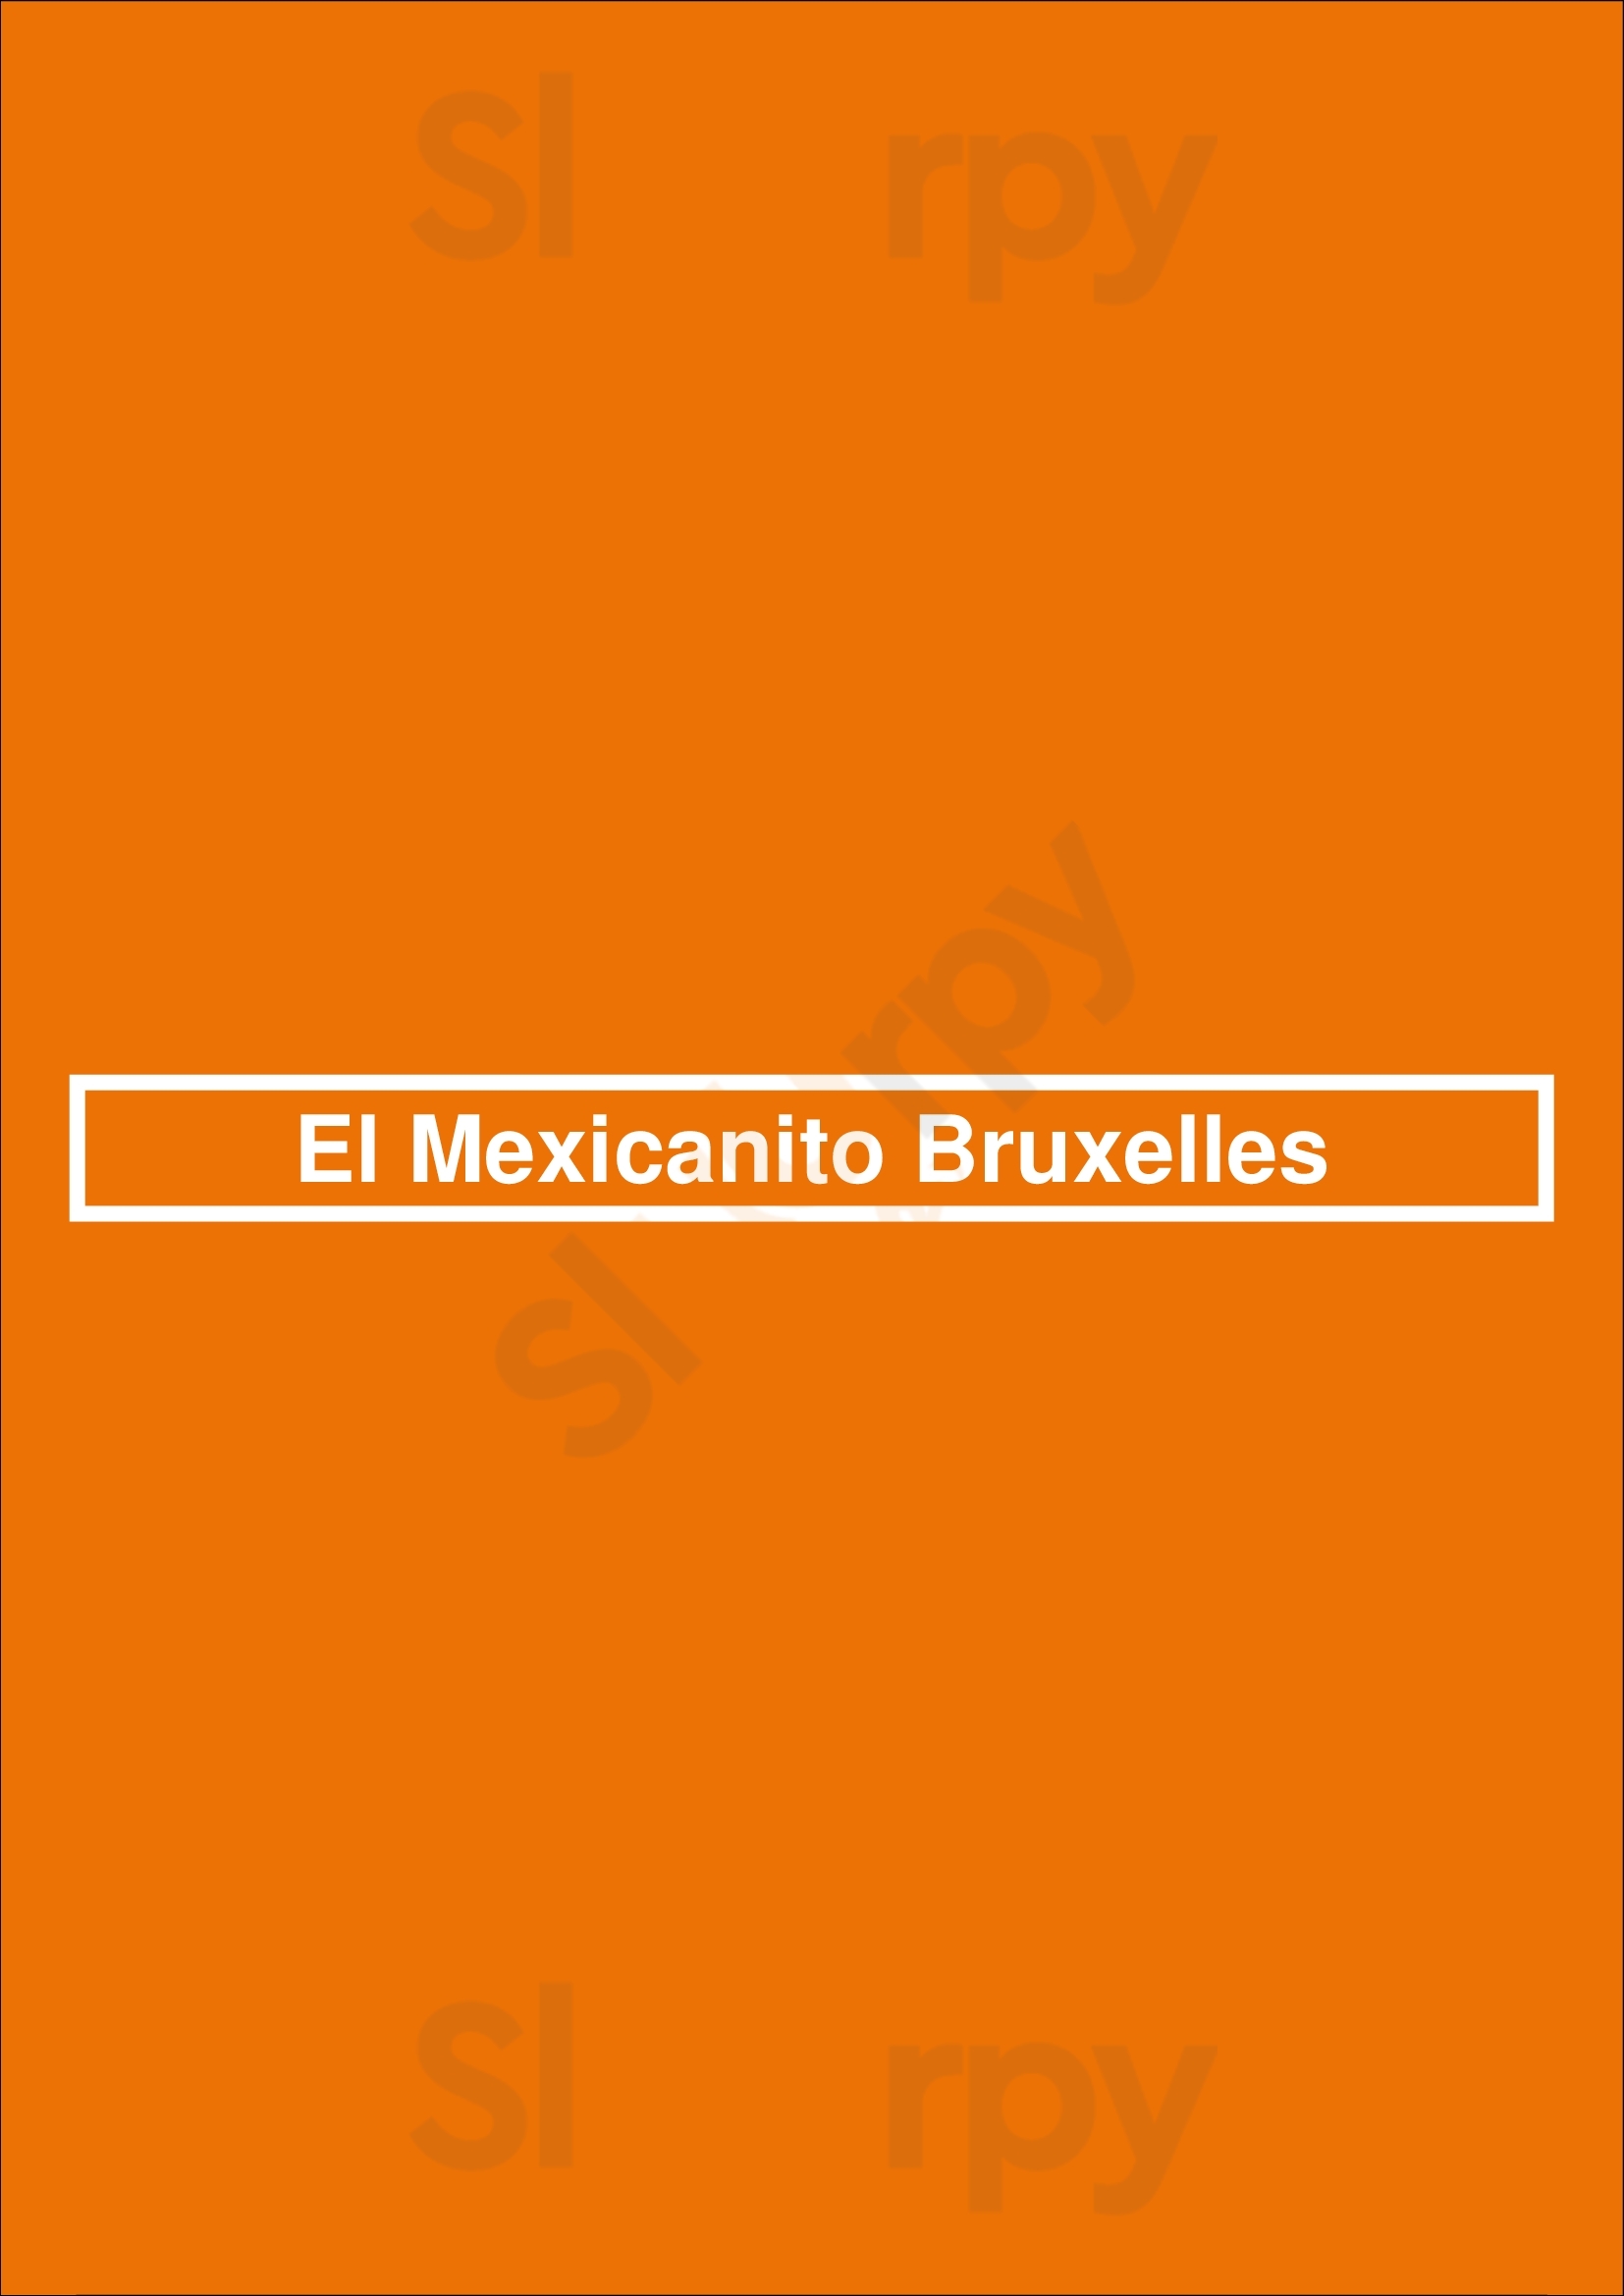 El Mexicanito Bruxelles Menu - 1